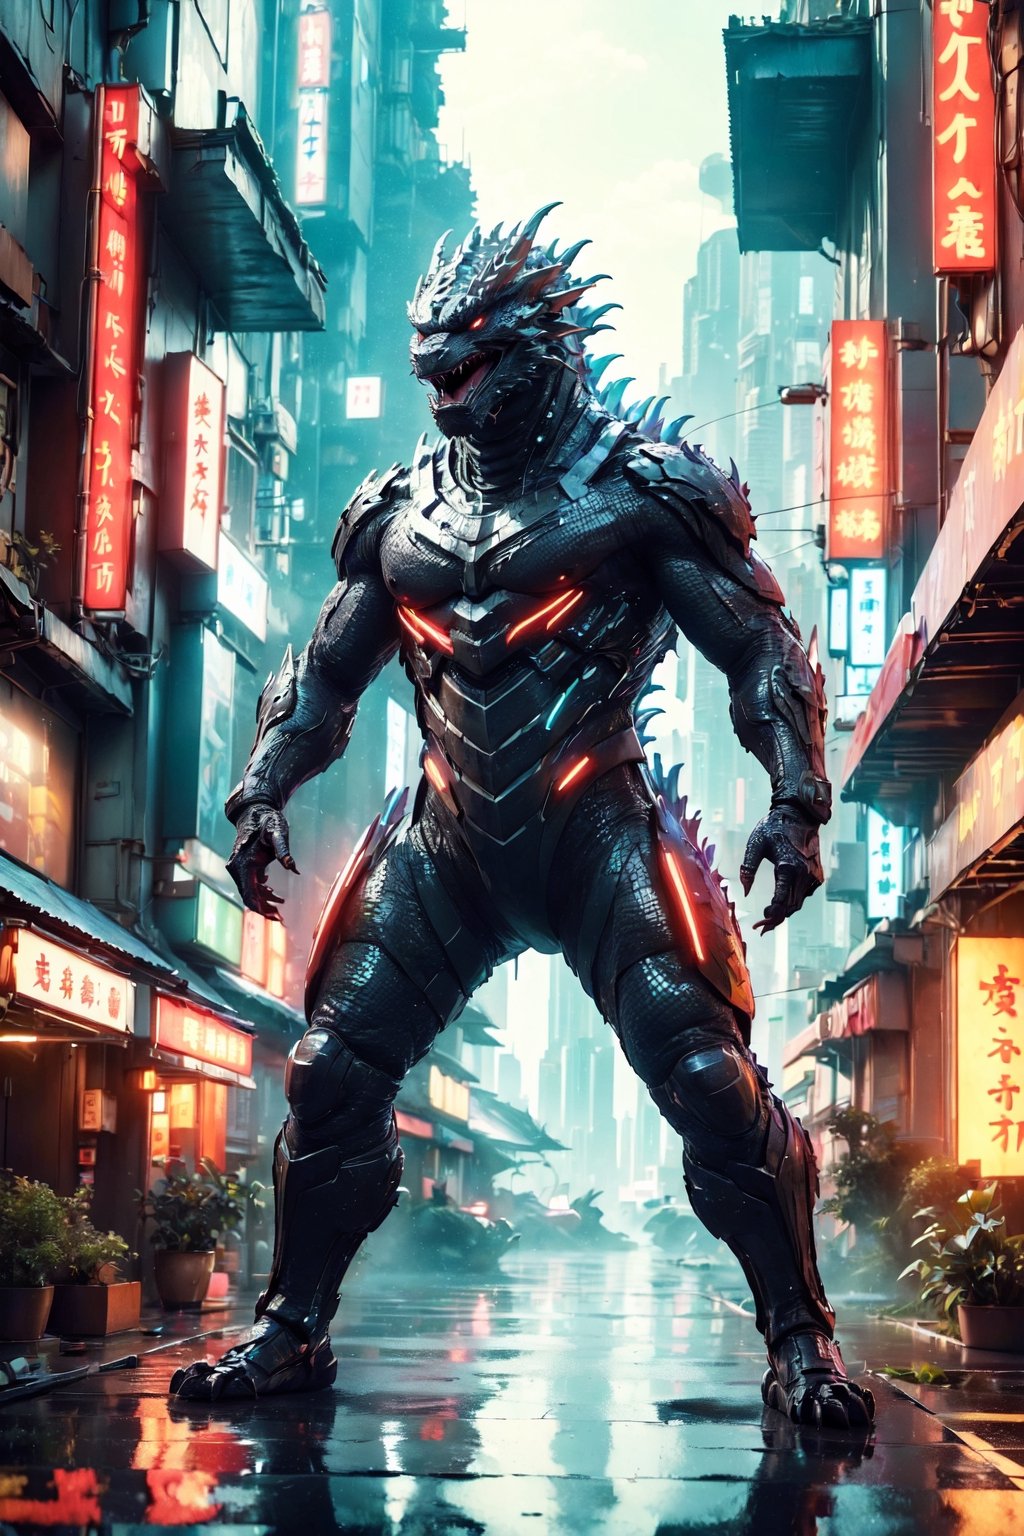 (Masterpiece:1.5), (Best quality:1.5), Cyberpunk style, full body, Godzilla, huge tail, facing the viewer, Godzilla tail, roar, laser, daytime, Doton, Cyberpunk,Chinese dragon